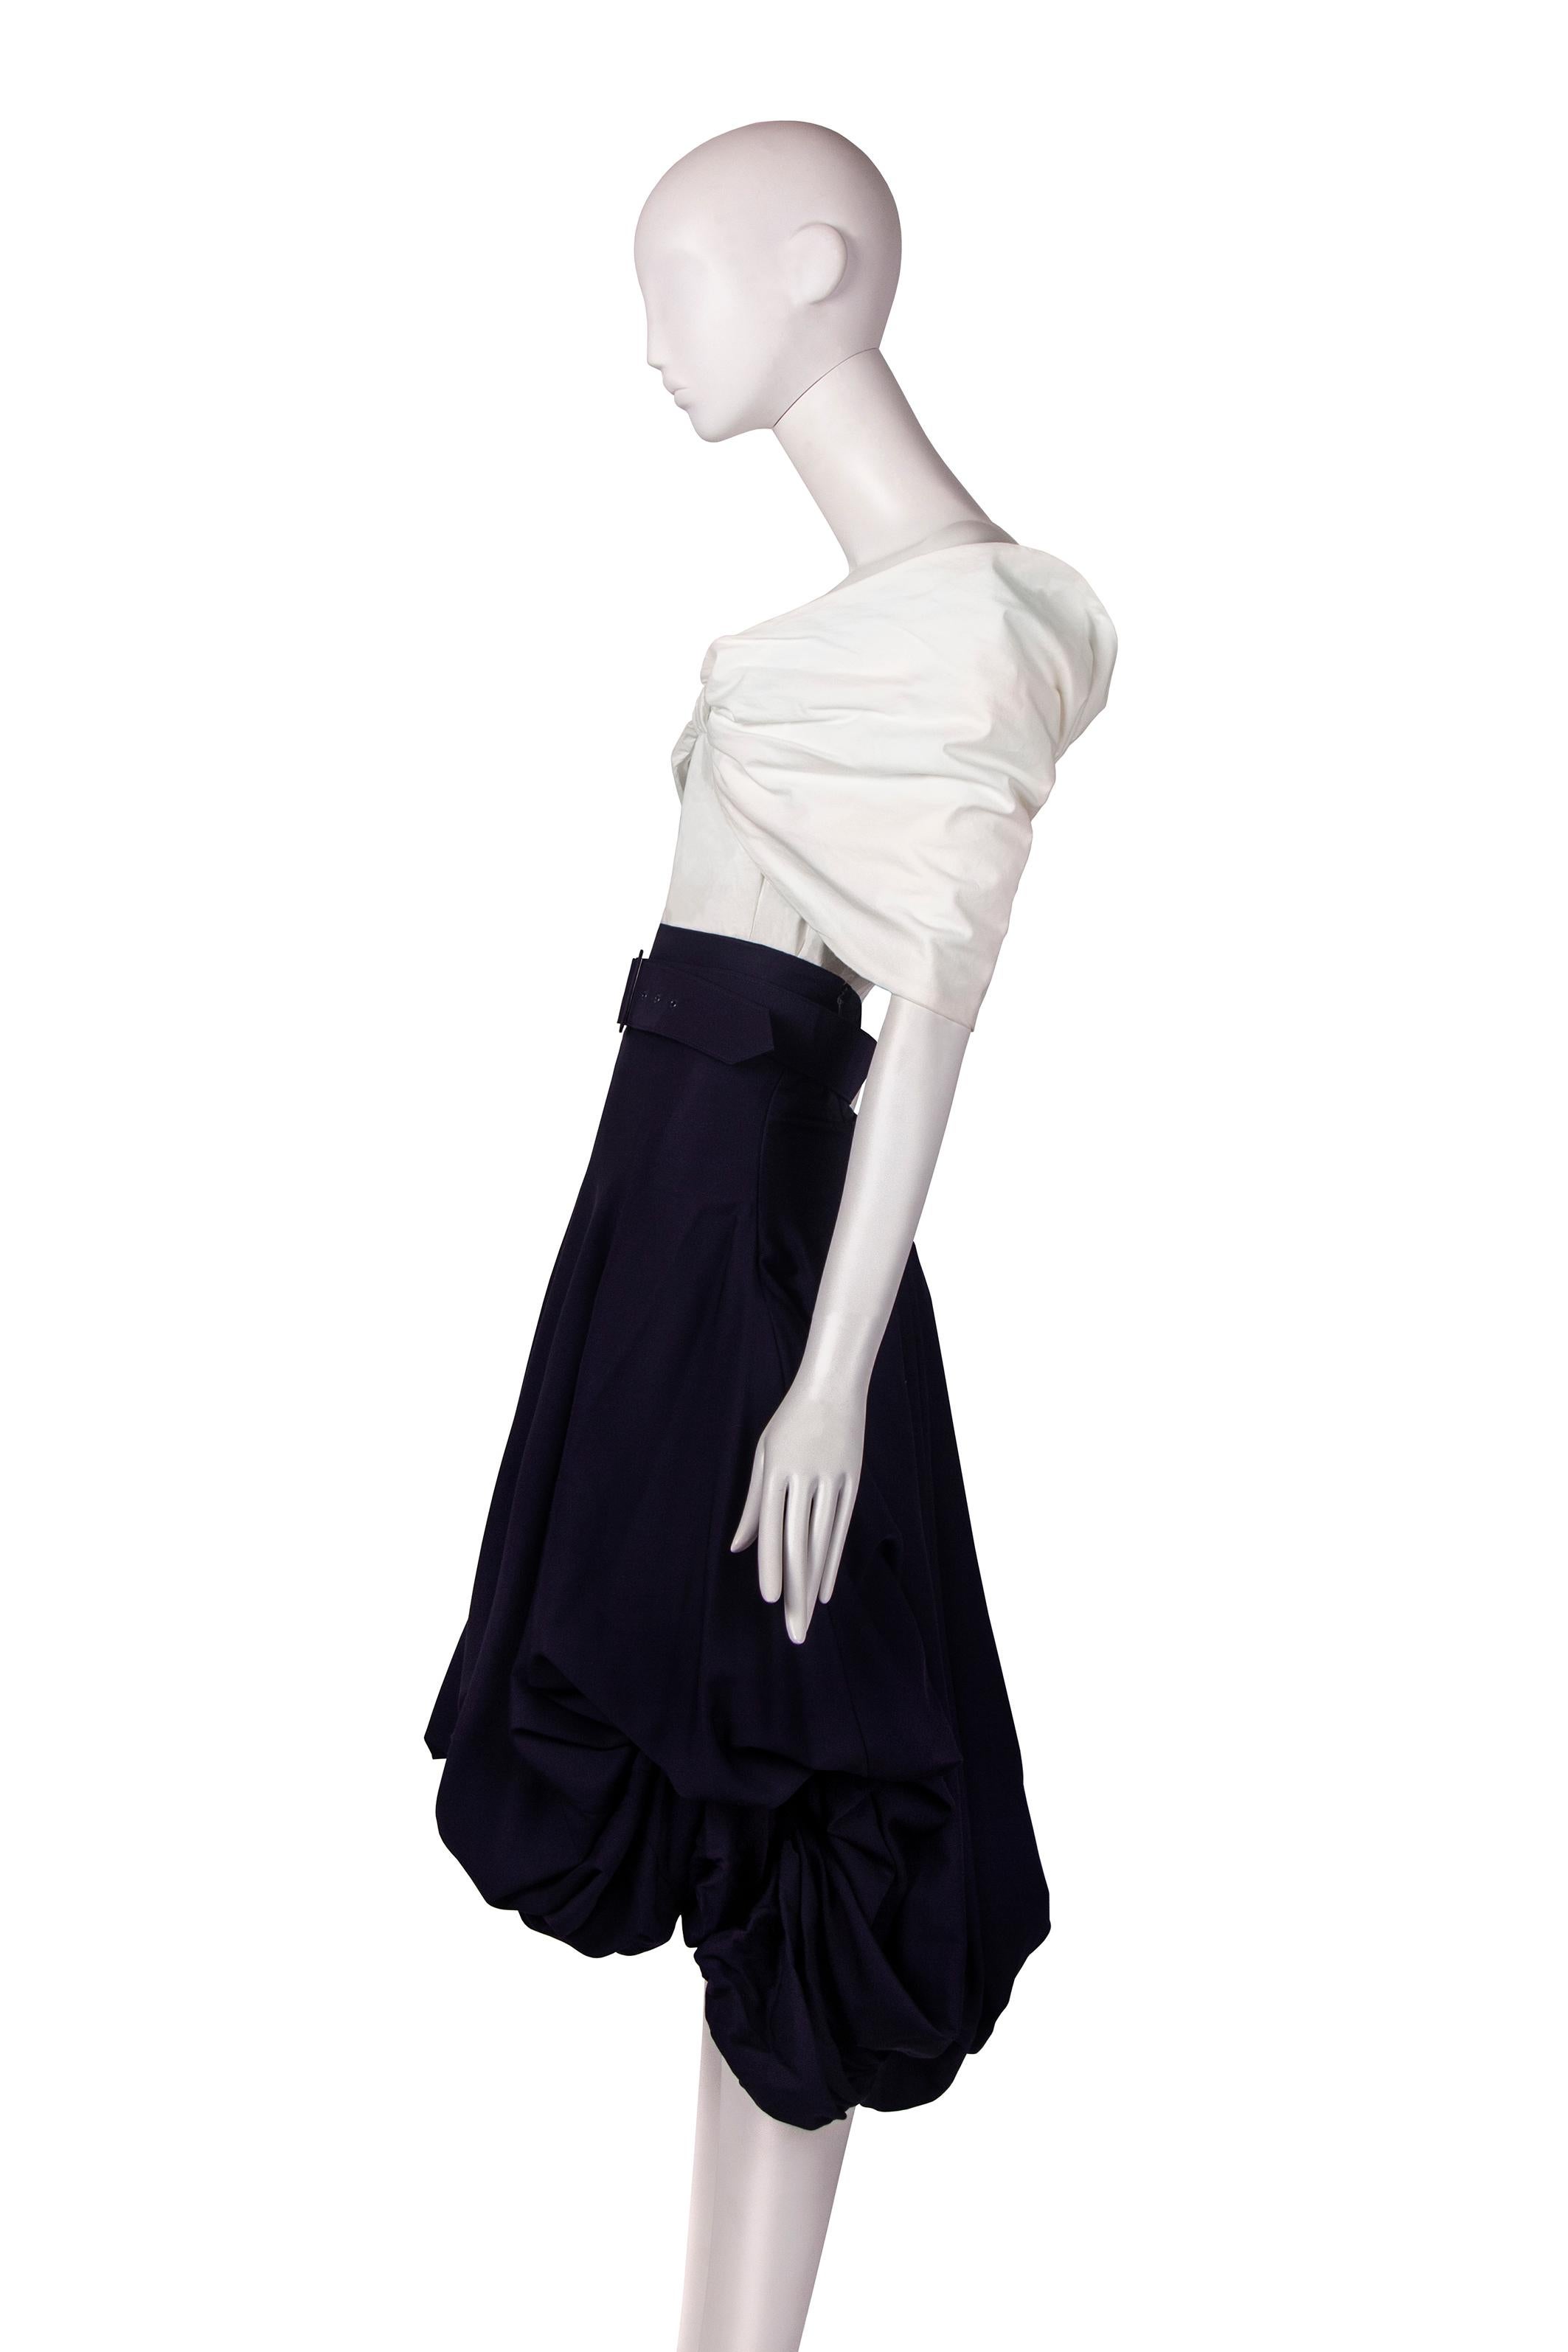 John Galliano 'Blanche Dubois' skirt ensemble, ss 1988 For Sale 1